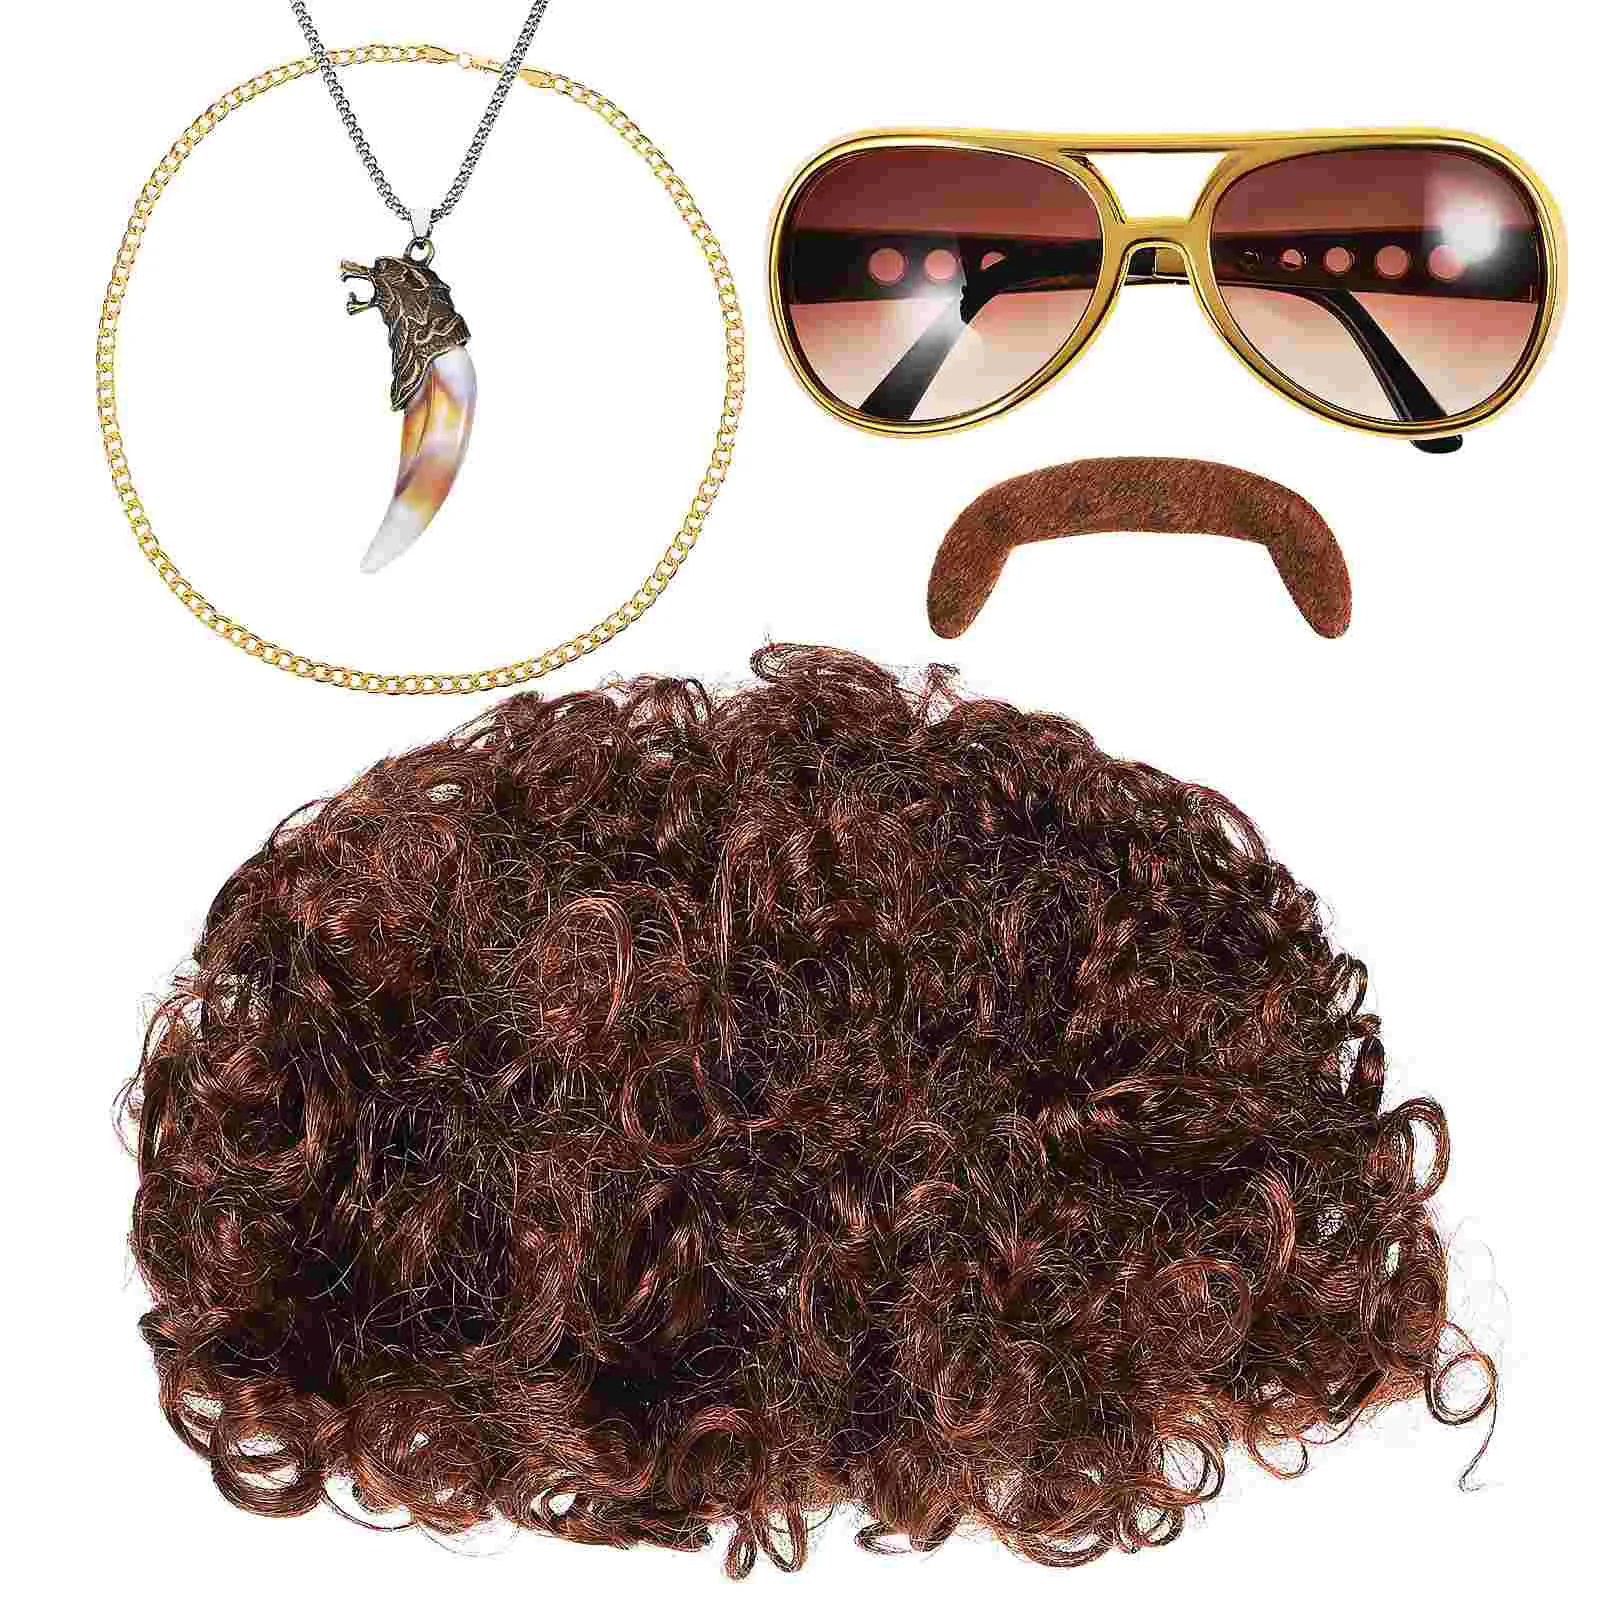 

Мужские аксессуары для костюма в стиле диско 70-х годов, аксессуары для ролевых игр, искусственные солнцезащитные очки с бородой, парики для косплея